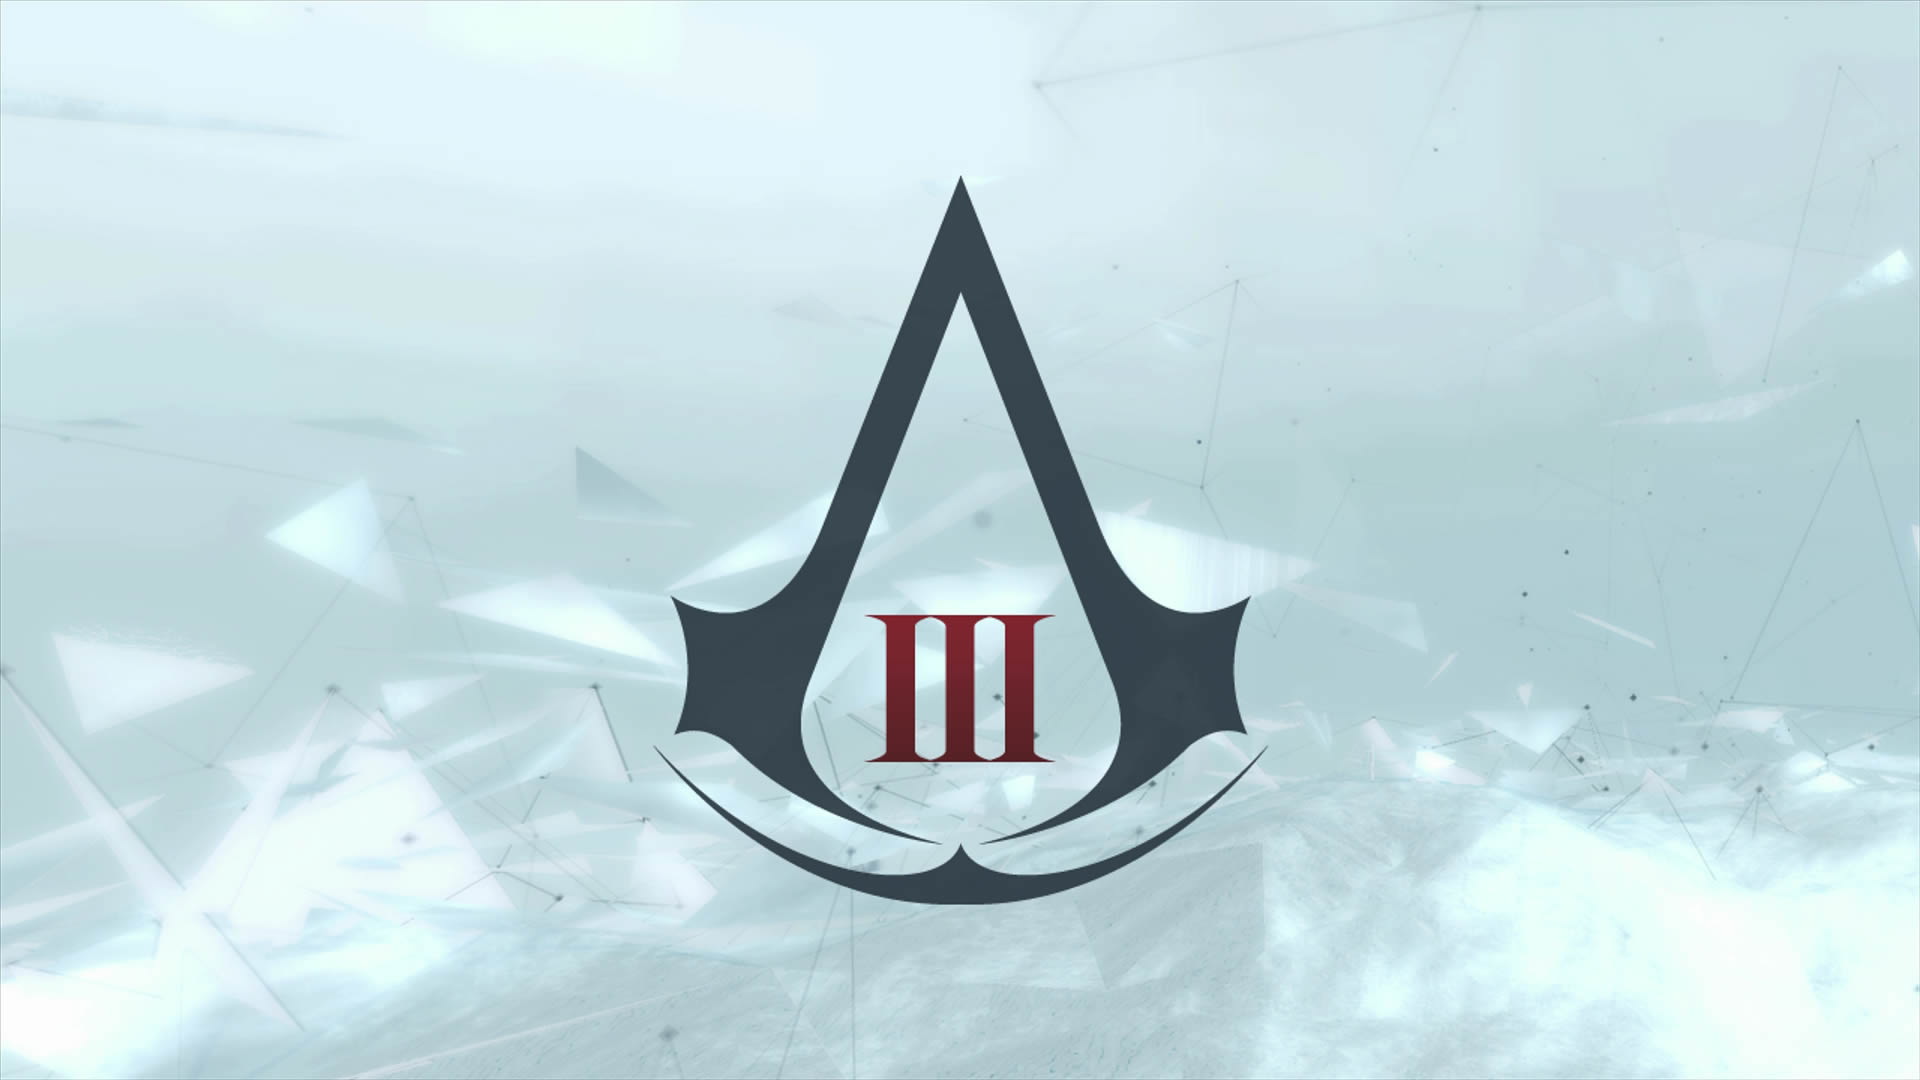 Assassins 3 механики. Значок ассасин Крид 3. Assassin's Creed 1 знак ассасинов. Ассасин Крид 3 ярлык. Assassins Creed знак ассасинов.